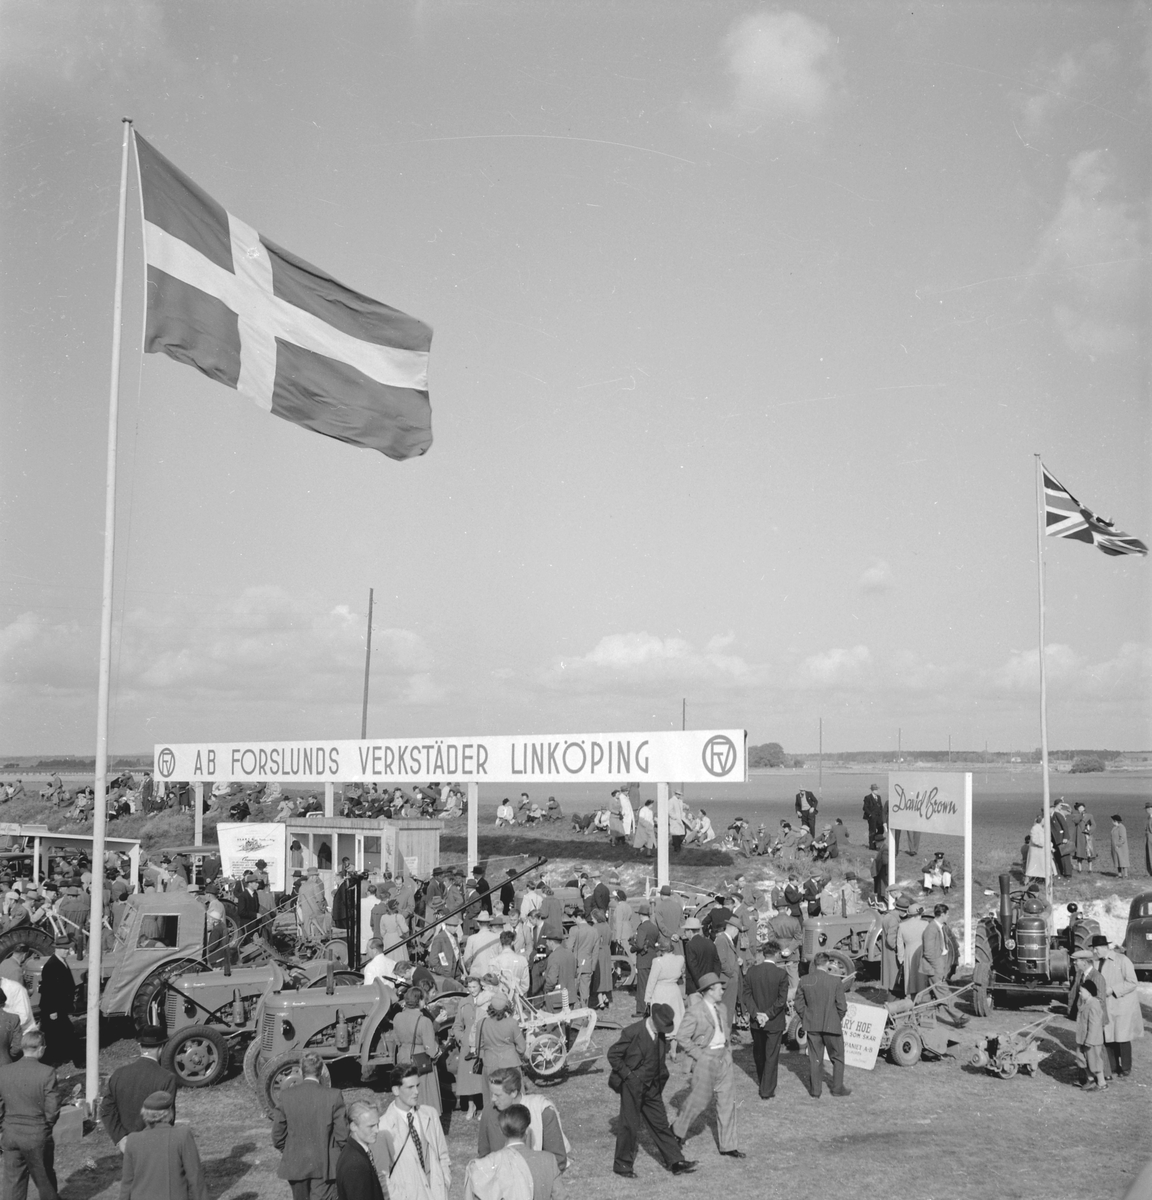 Motiv från 1950 års Tornbyutställning i Linköping. Arrangemanget var vid tiden landets största återkommande jordbruksmässa med upp till 60 000 besökare. Bilden visar Forslunds verkstäders mässplats.